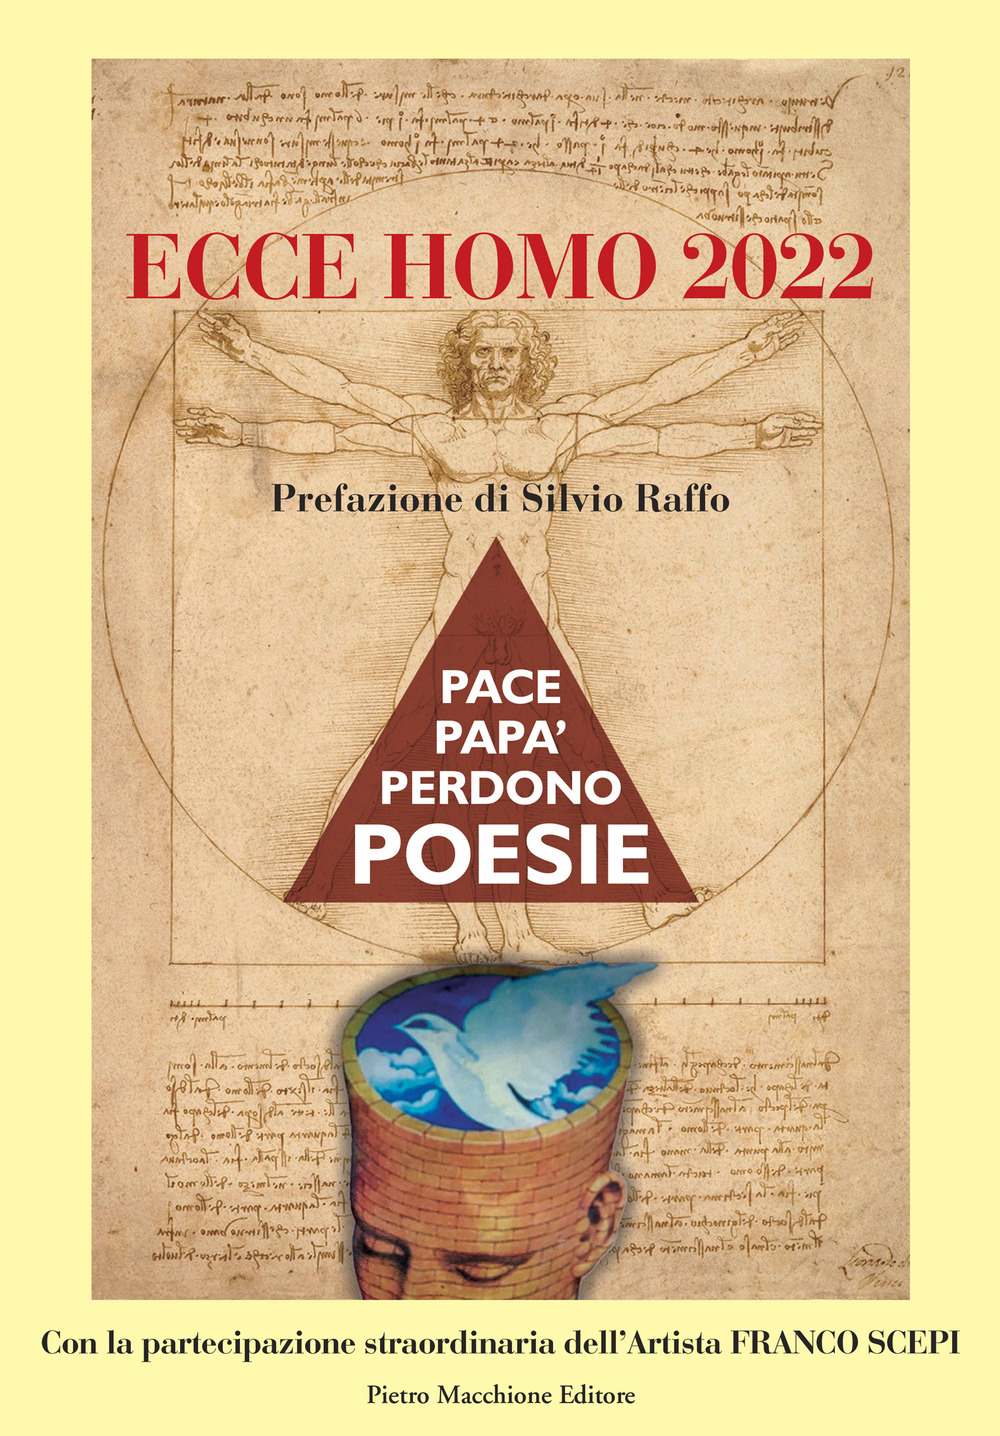 Ecce homo 2022